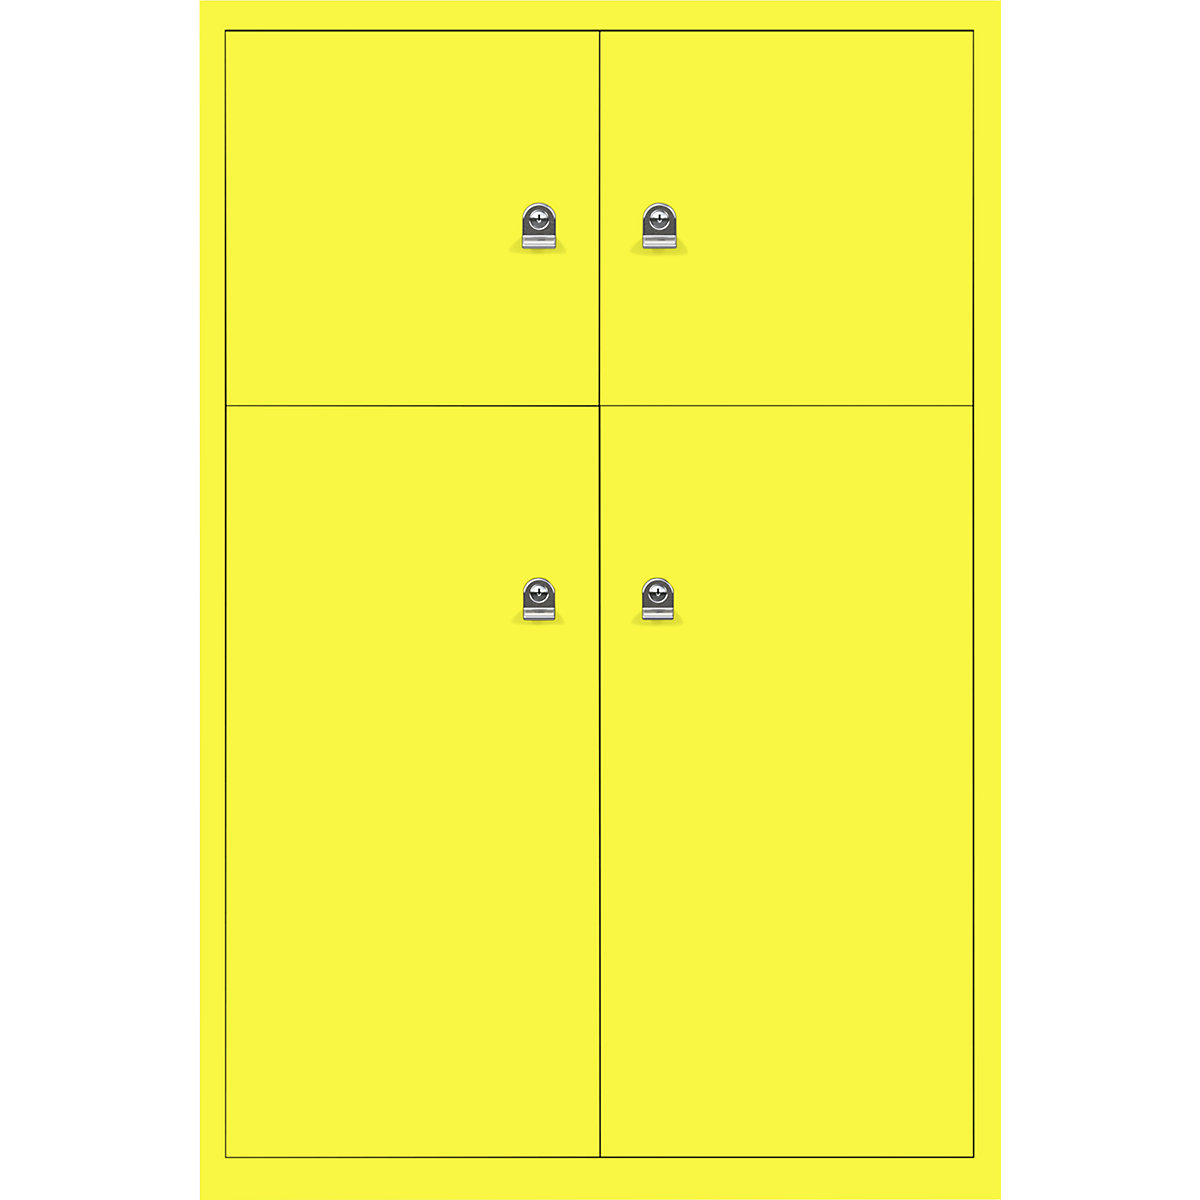 Omara s predelki z zaklepanjem LateralFile™ – BISLEY, 4 predelki z zaklepanjem, višina 2 x 375 mm, 2 x 755 mm, cinkovo rumene barve-15